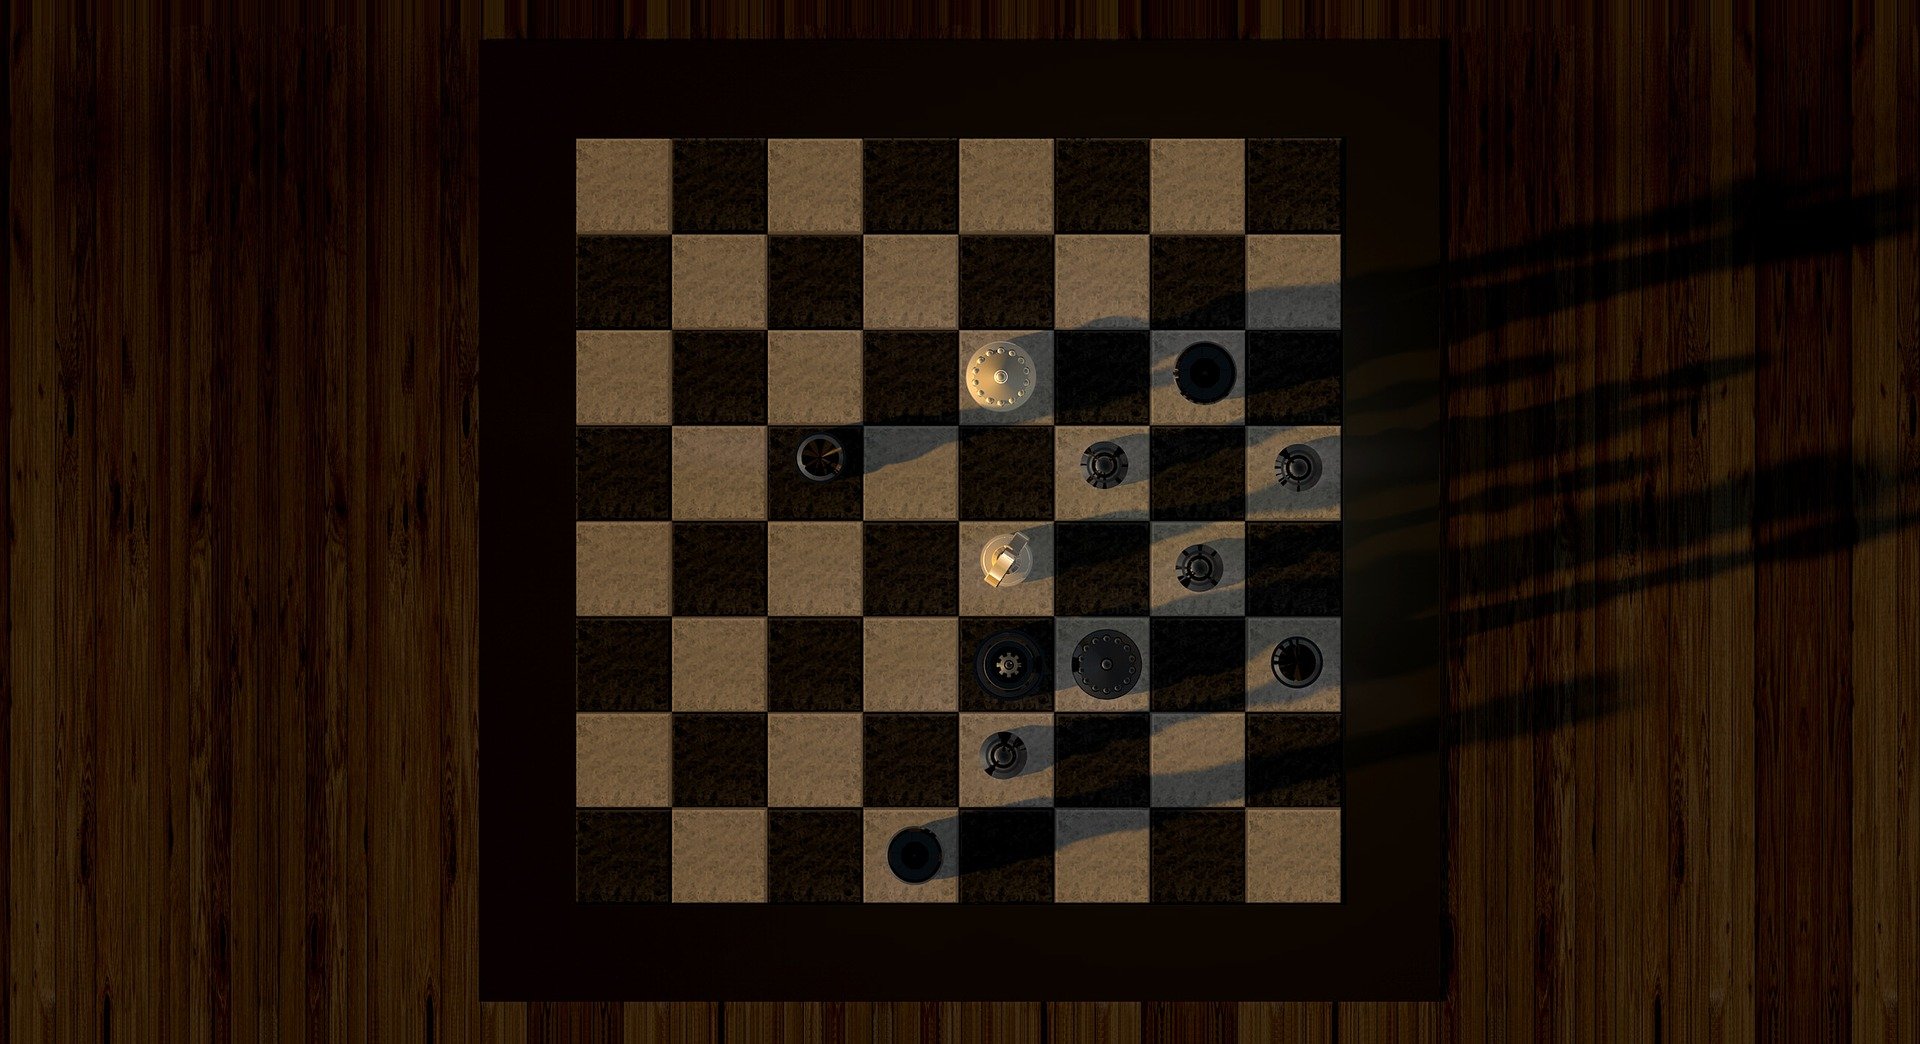 Objeto sobre el que se colocan las piezas de ajedrez